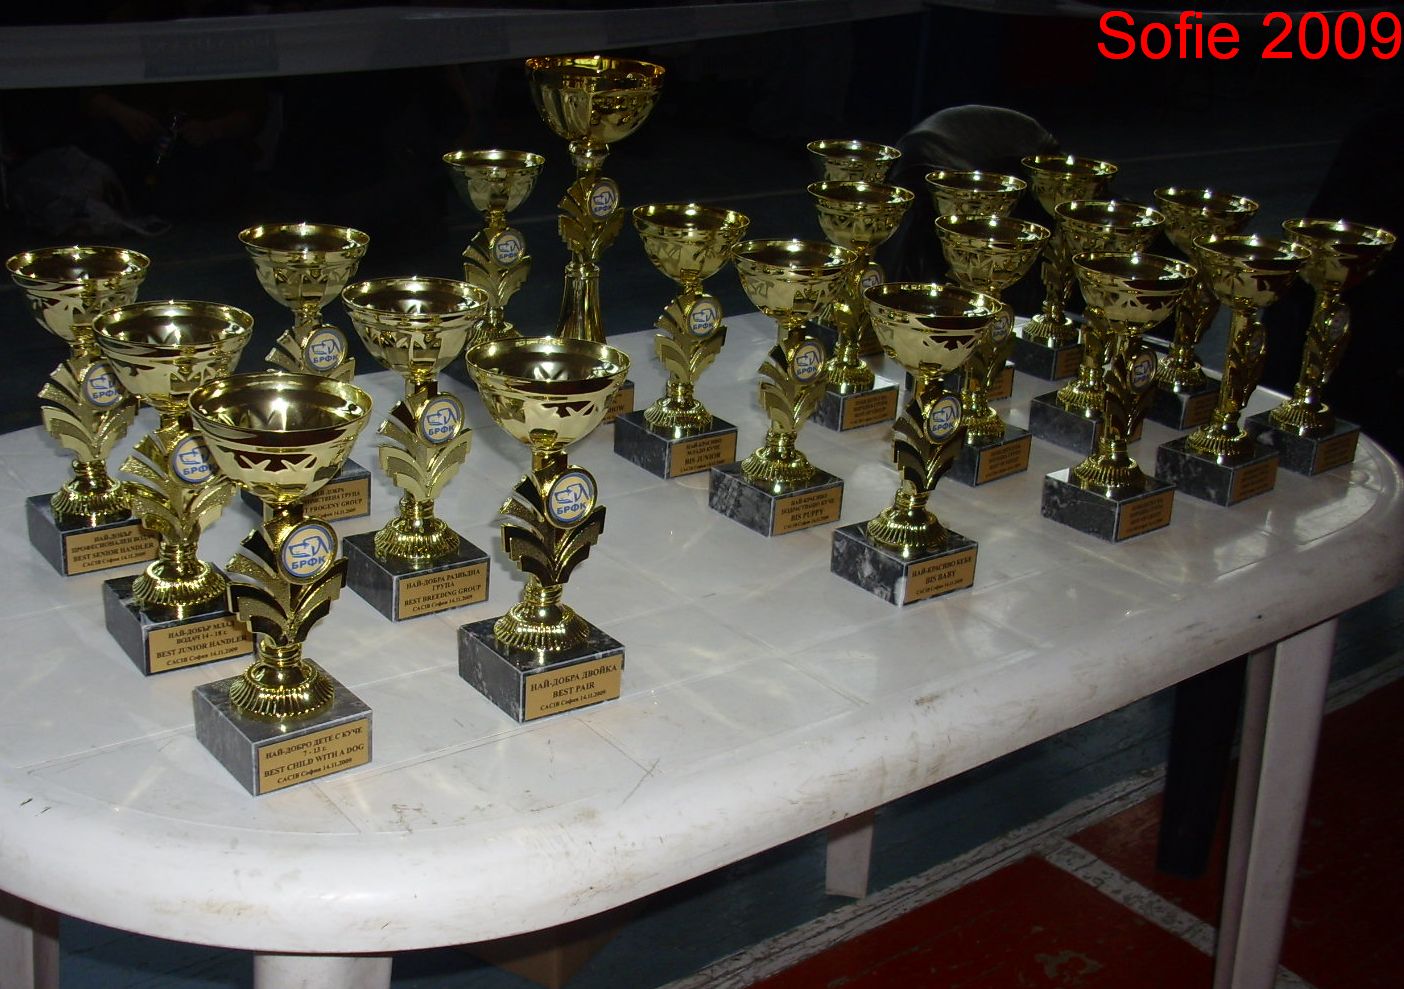 Sofie 2009 poháry.